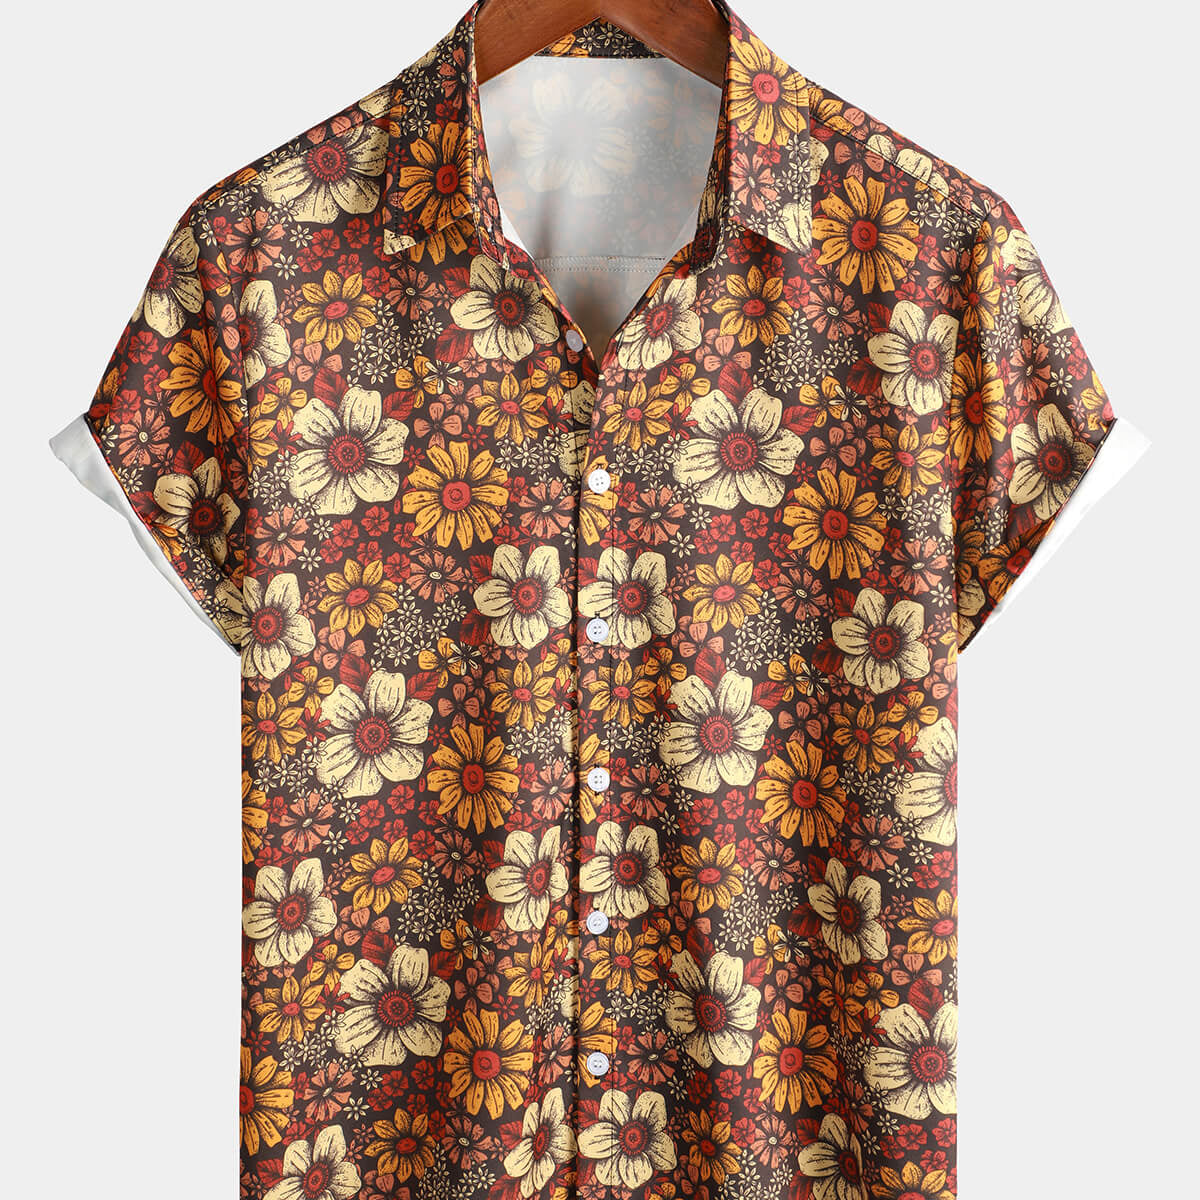 Camisa hawaiana marrón retro de verano de manga corta con botones florales vintage de los años 70 para hombre